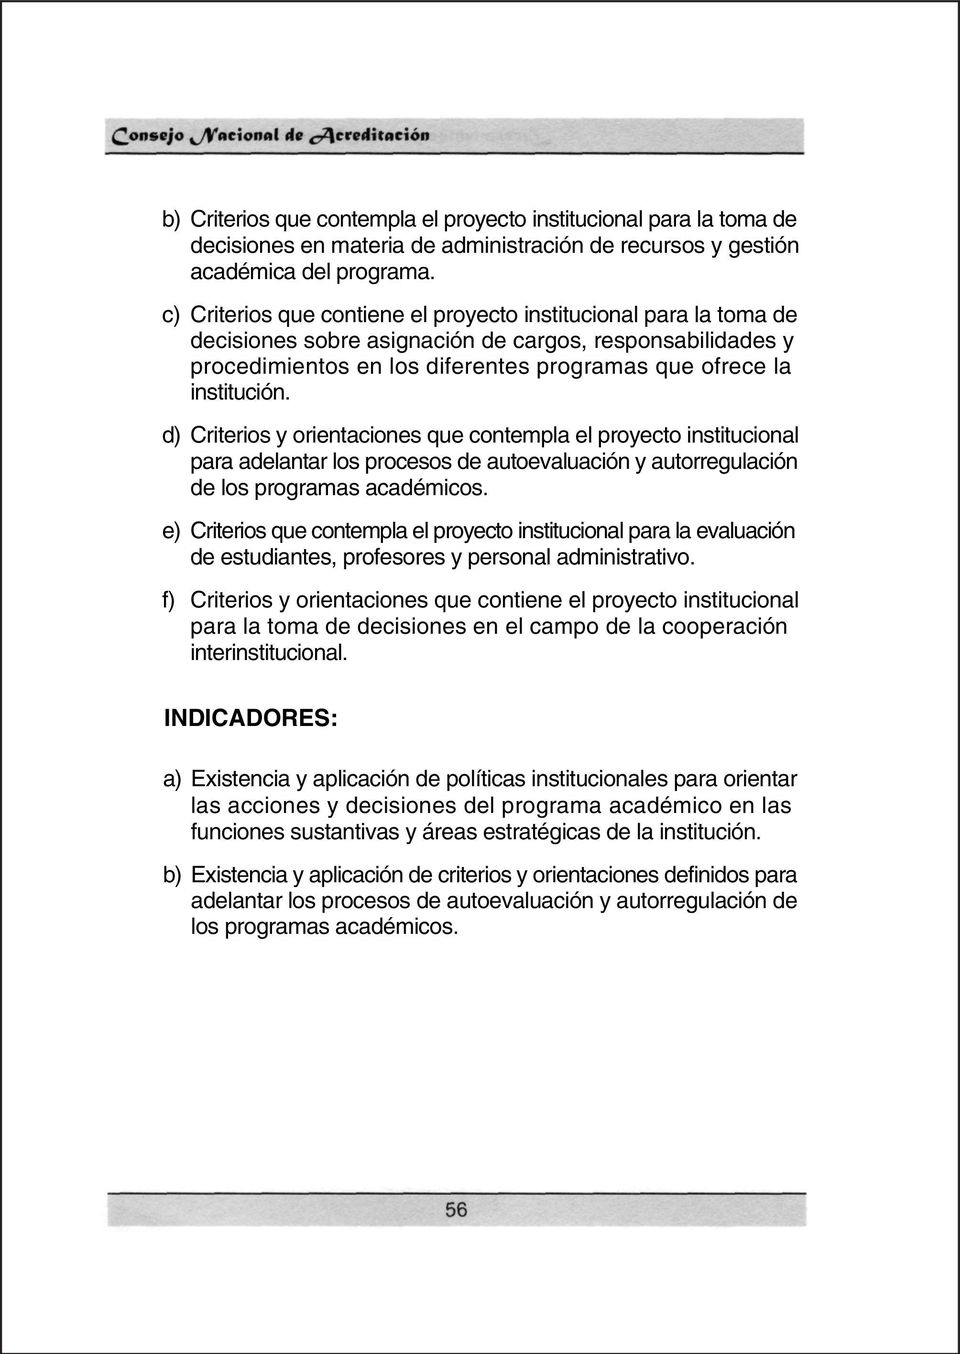 d) Criterios y orientaciones que contempla el proyecto institucional para adelantar los procesos de autoevaluación y autorregulación de los programas académicos.